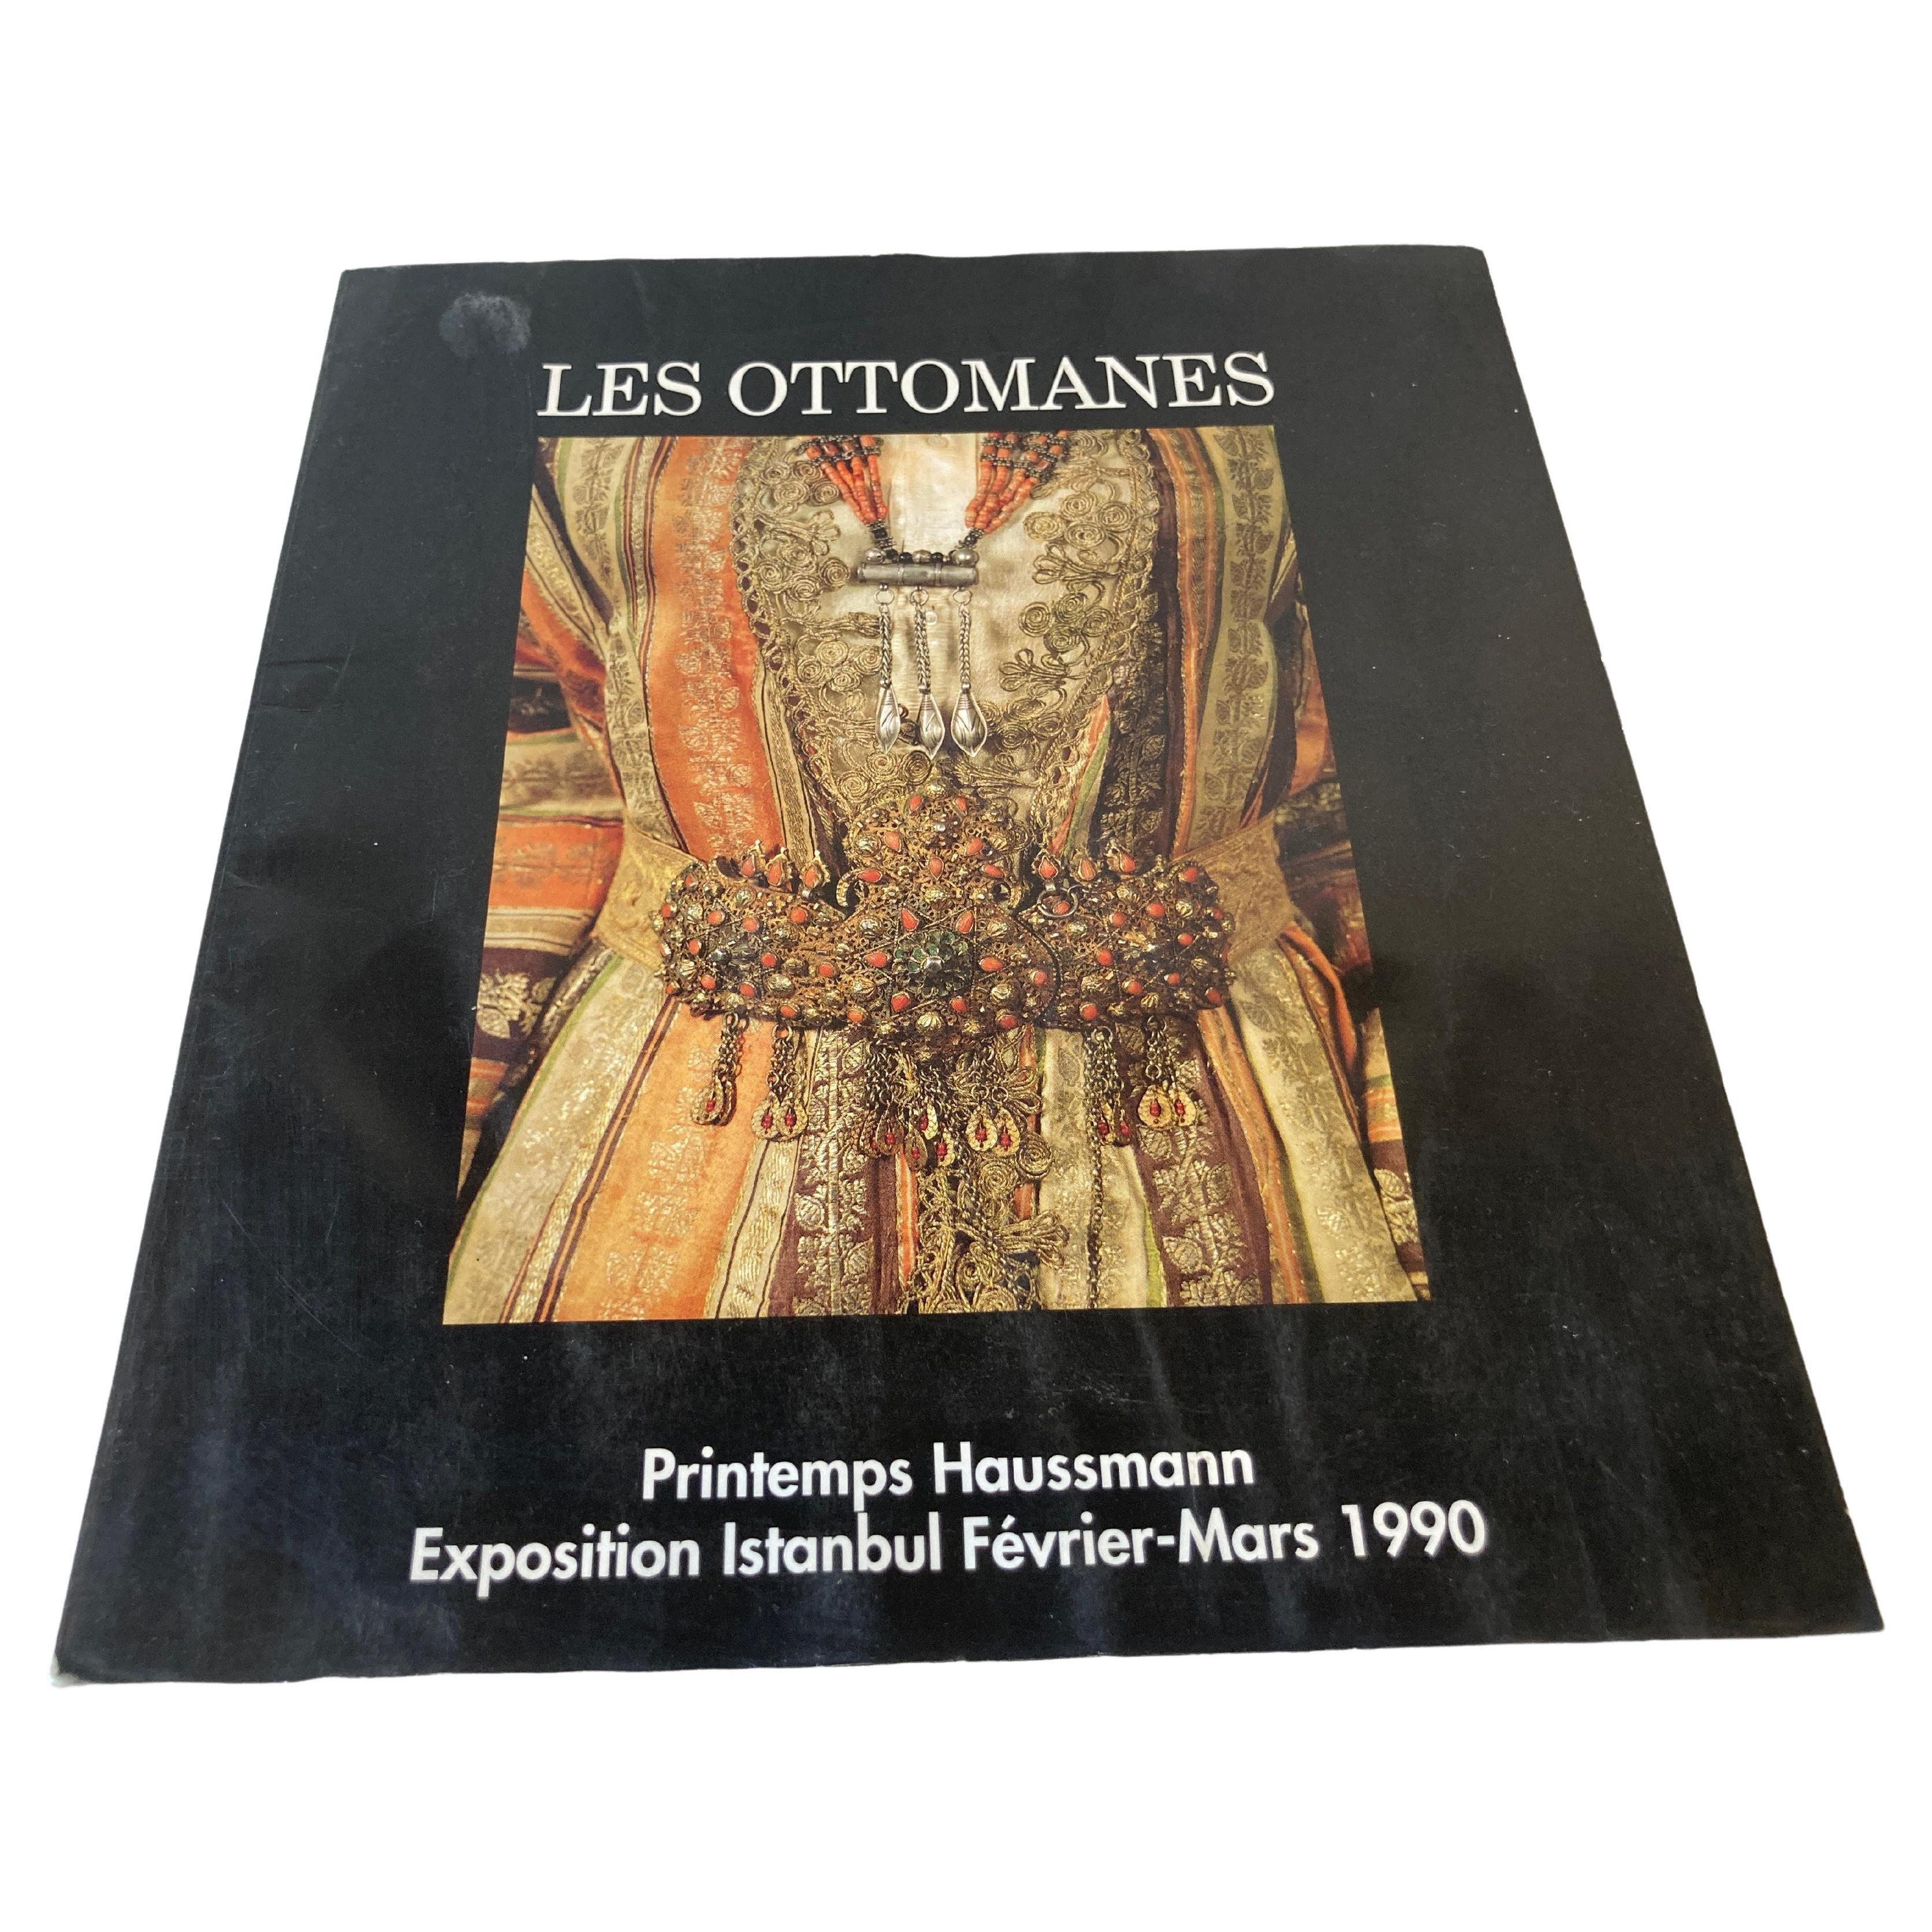 Les Ottomanes Printemps Haussman Paris Exposition d'Istanbul 1990